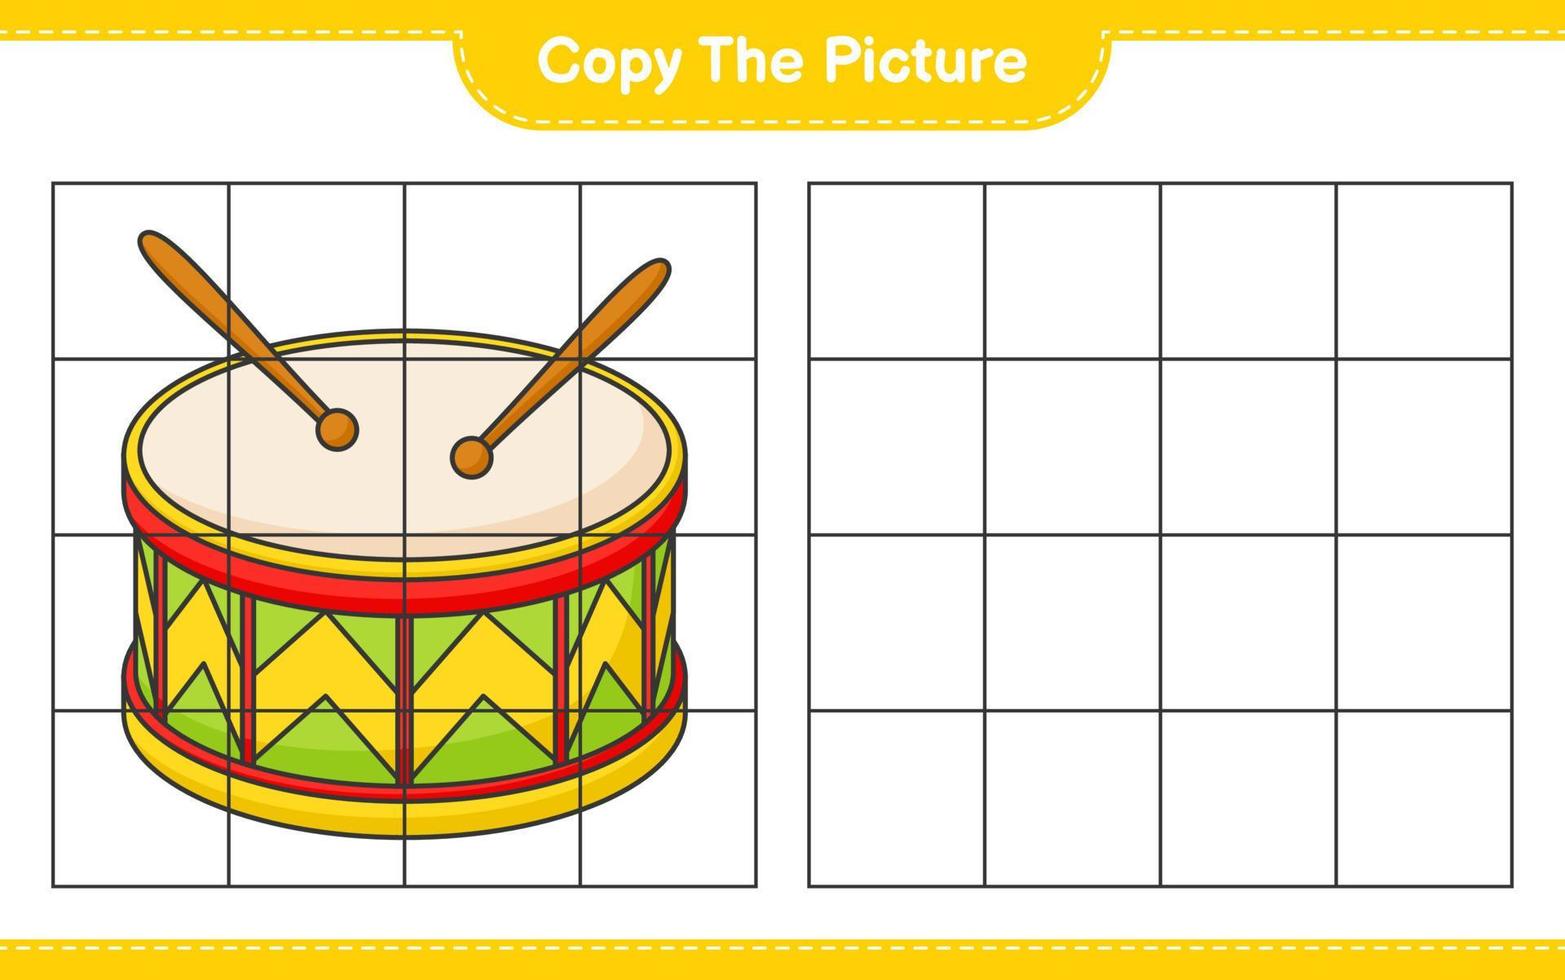 copiare l'immagine, copiare l'immagine del tamburo utilizzando le linee della griglia. gioco educativo per bambini, foglio di lavoro stampabile, illustrazione vettoriale